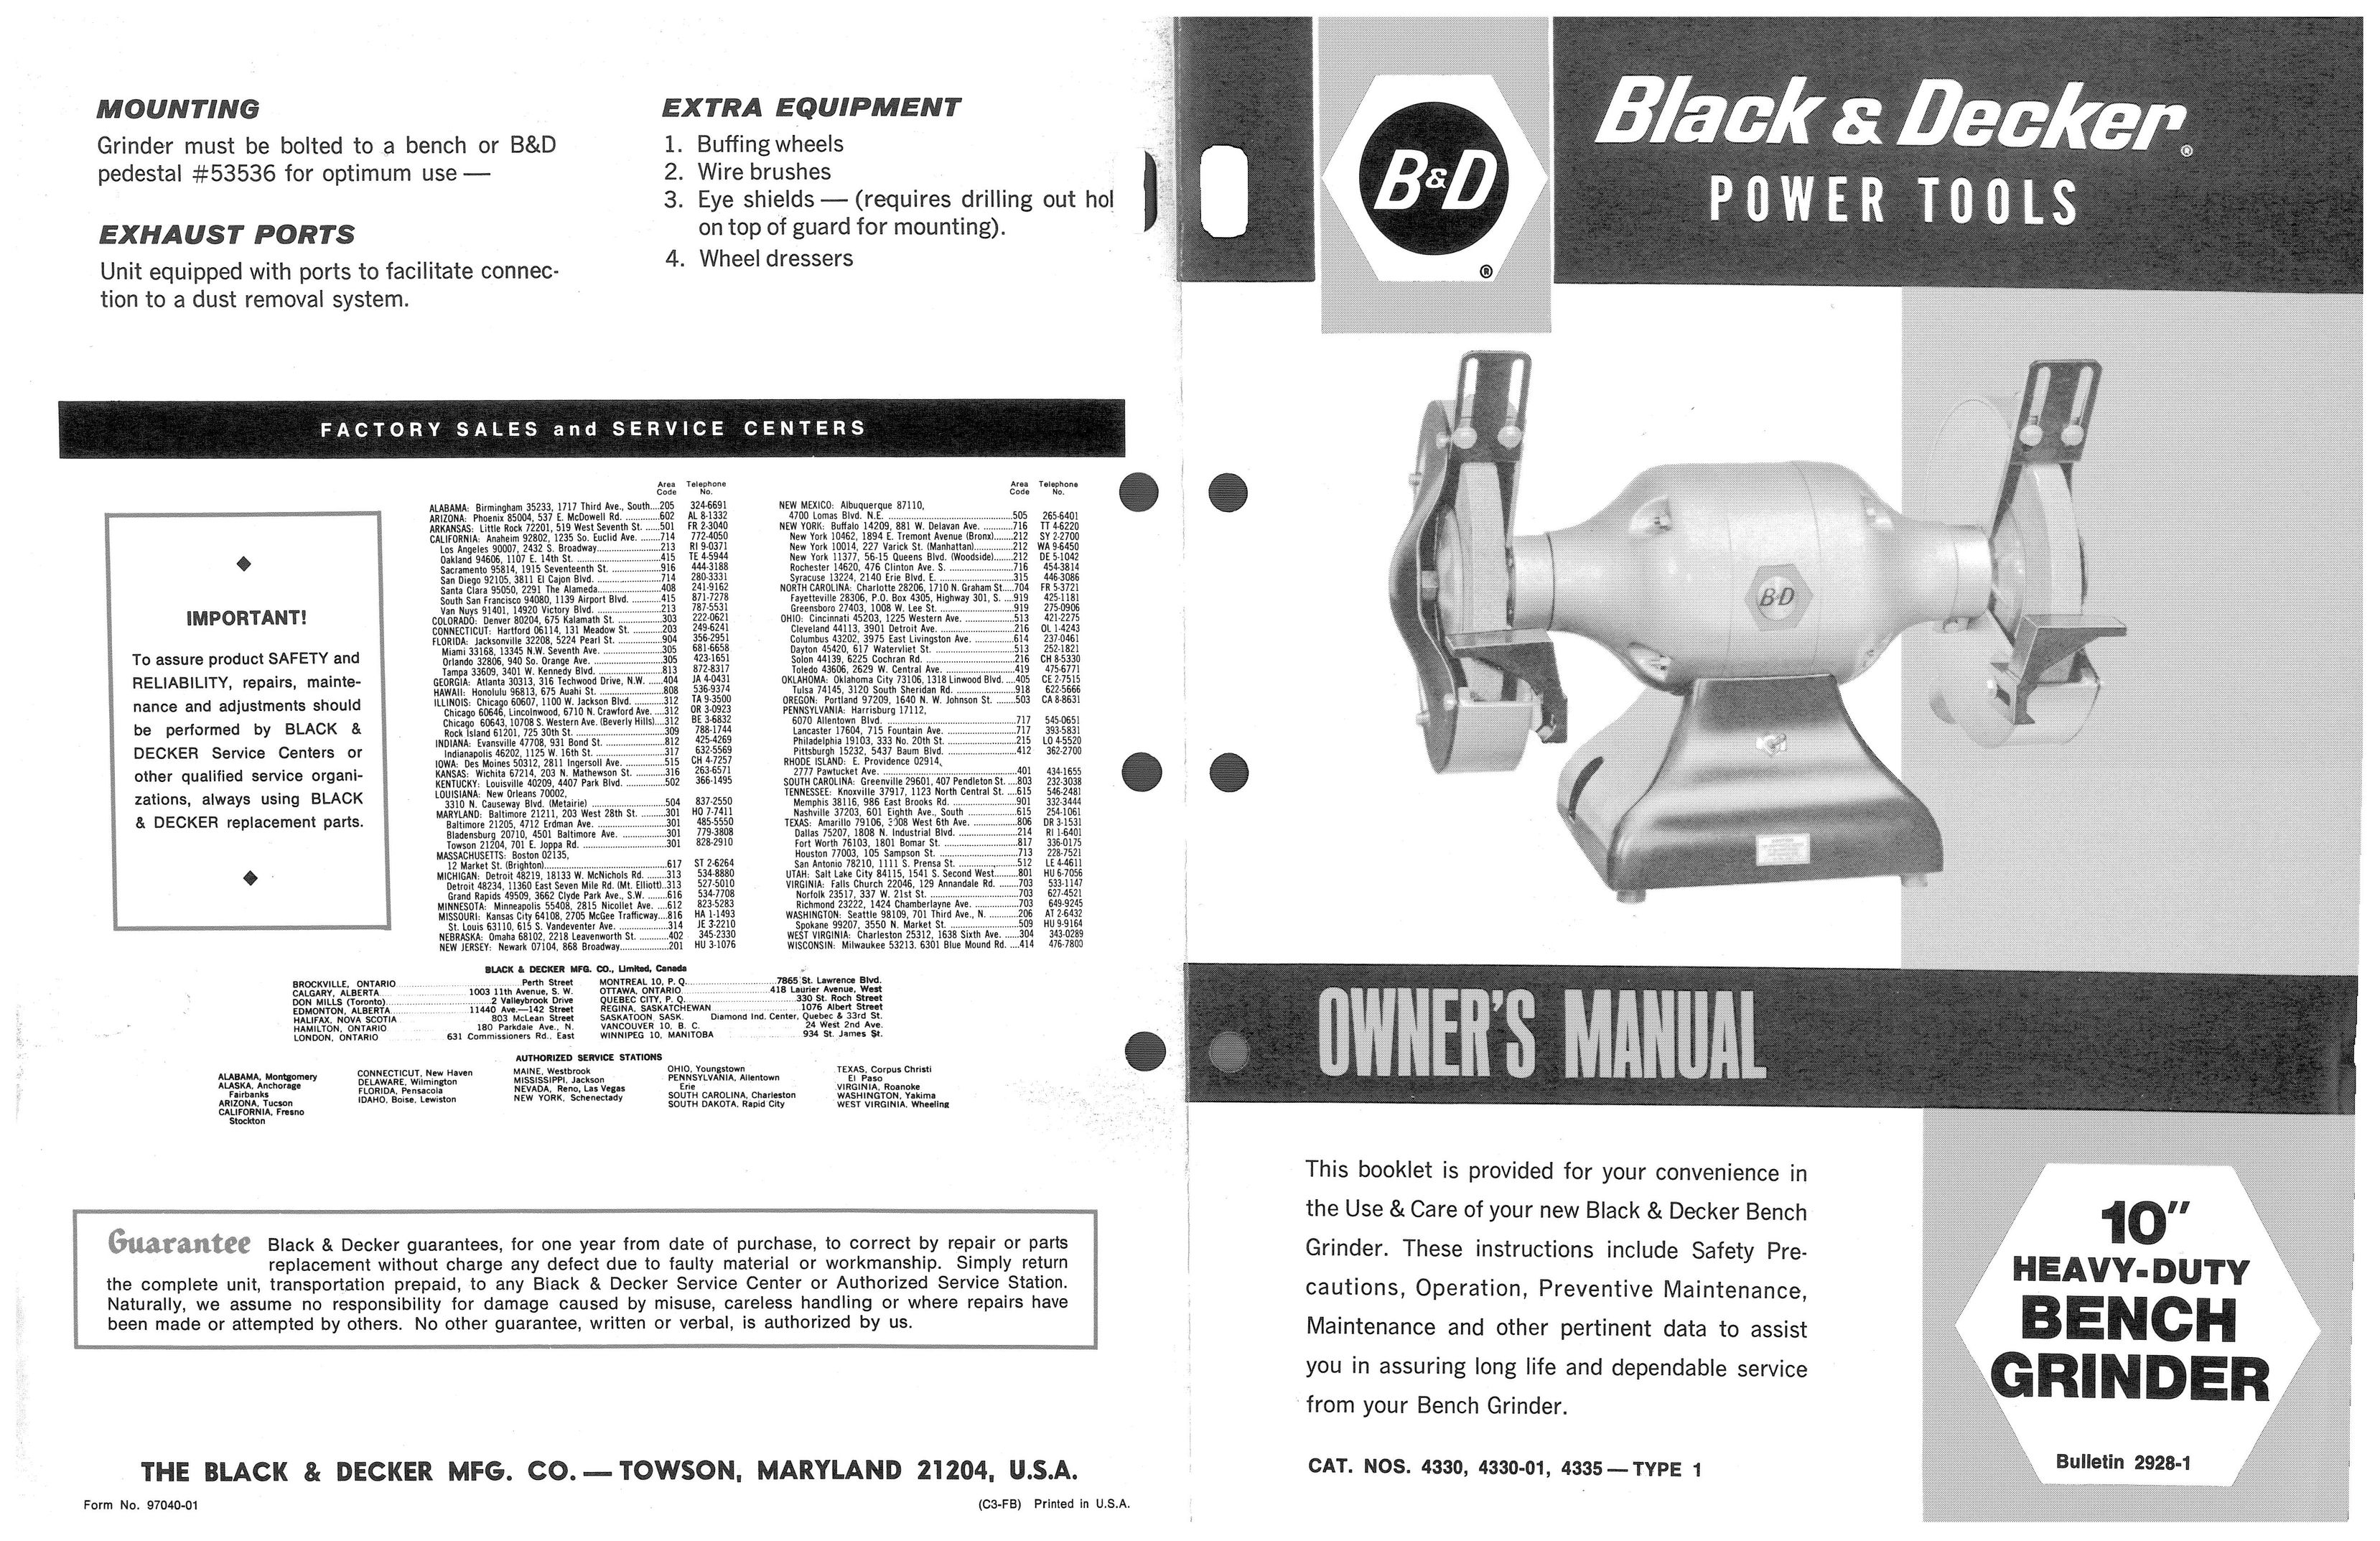 Black & Decker 4330 Grinder User Manual